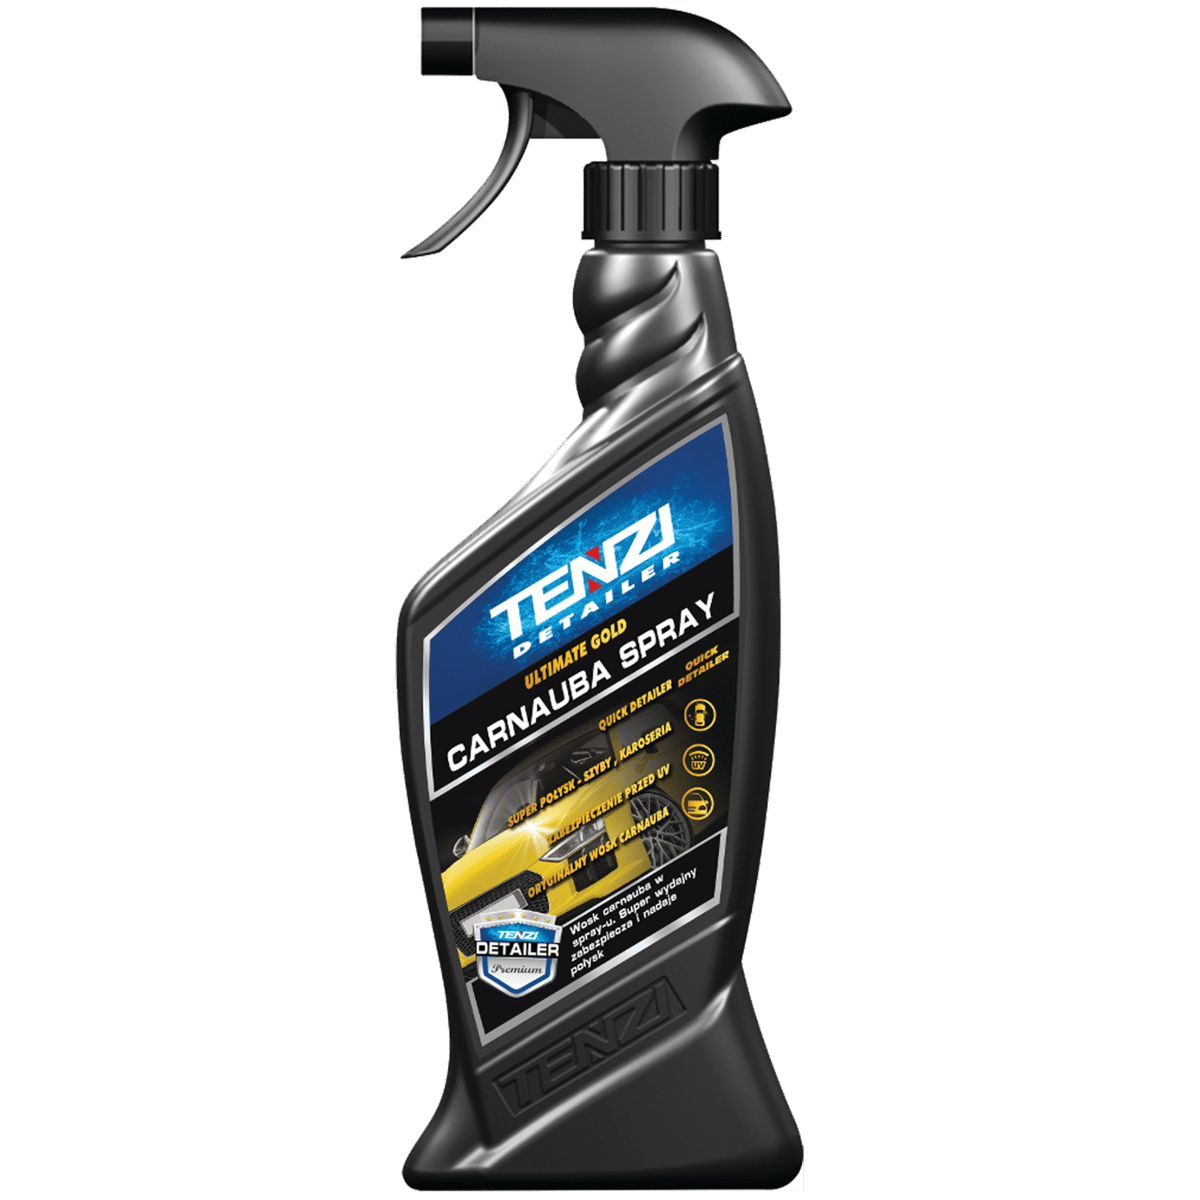 TENZI DETAILER Carnauba Spray 600ml Spray z Hydrofobowym Zabezpieczeniem z Dodatkiem Wosku Carnauba